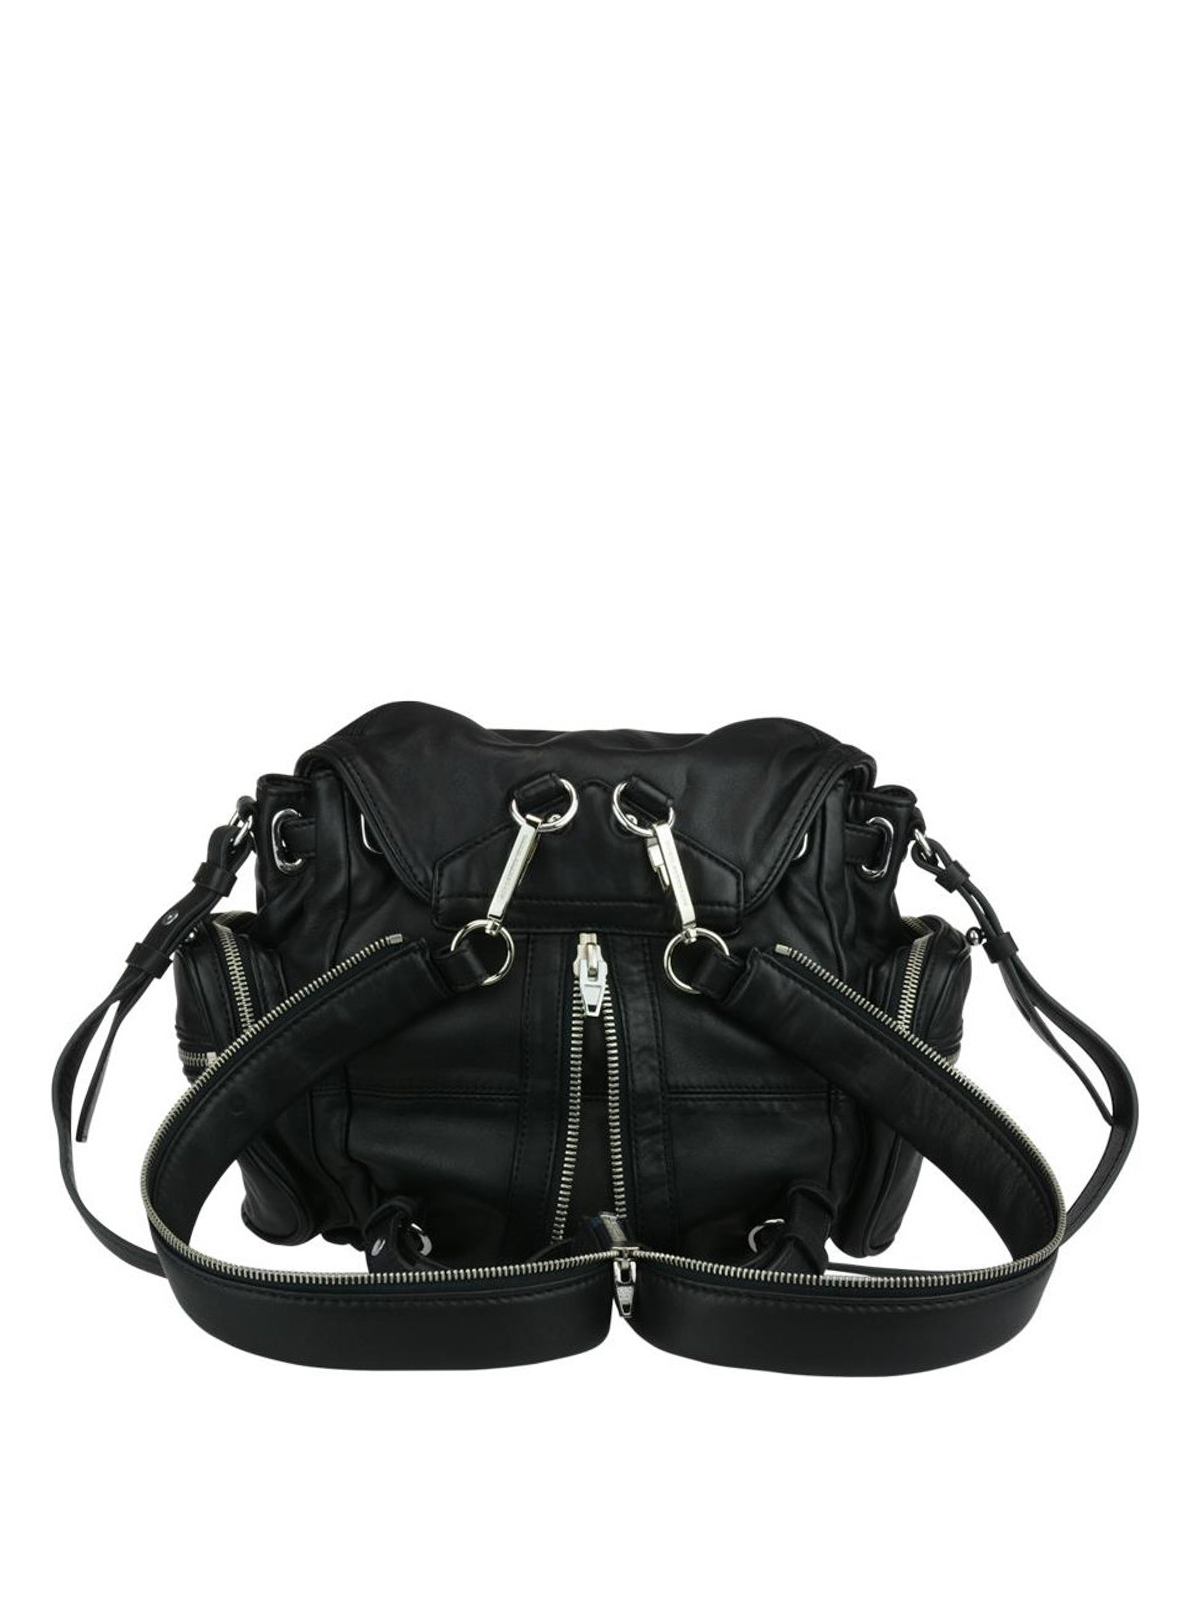 Backpacks Alexander Wang - Marti Mini zipped leather backpack